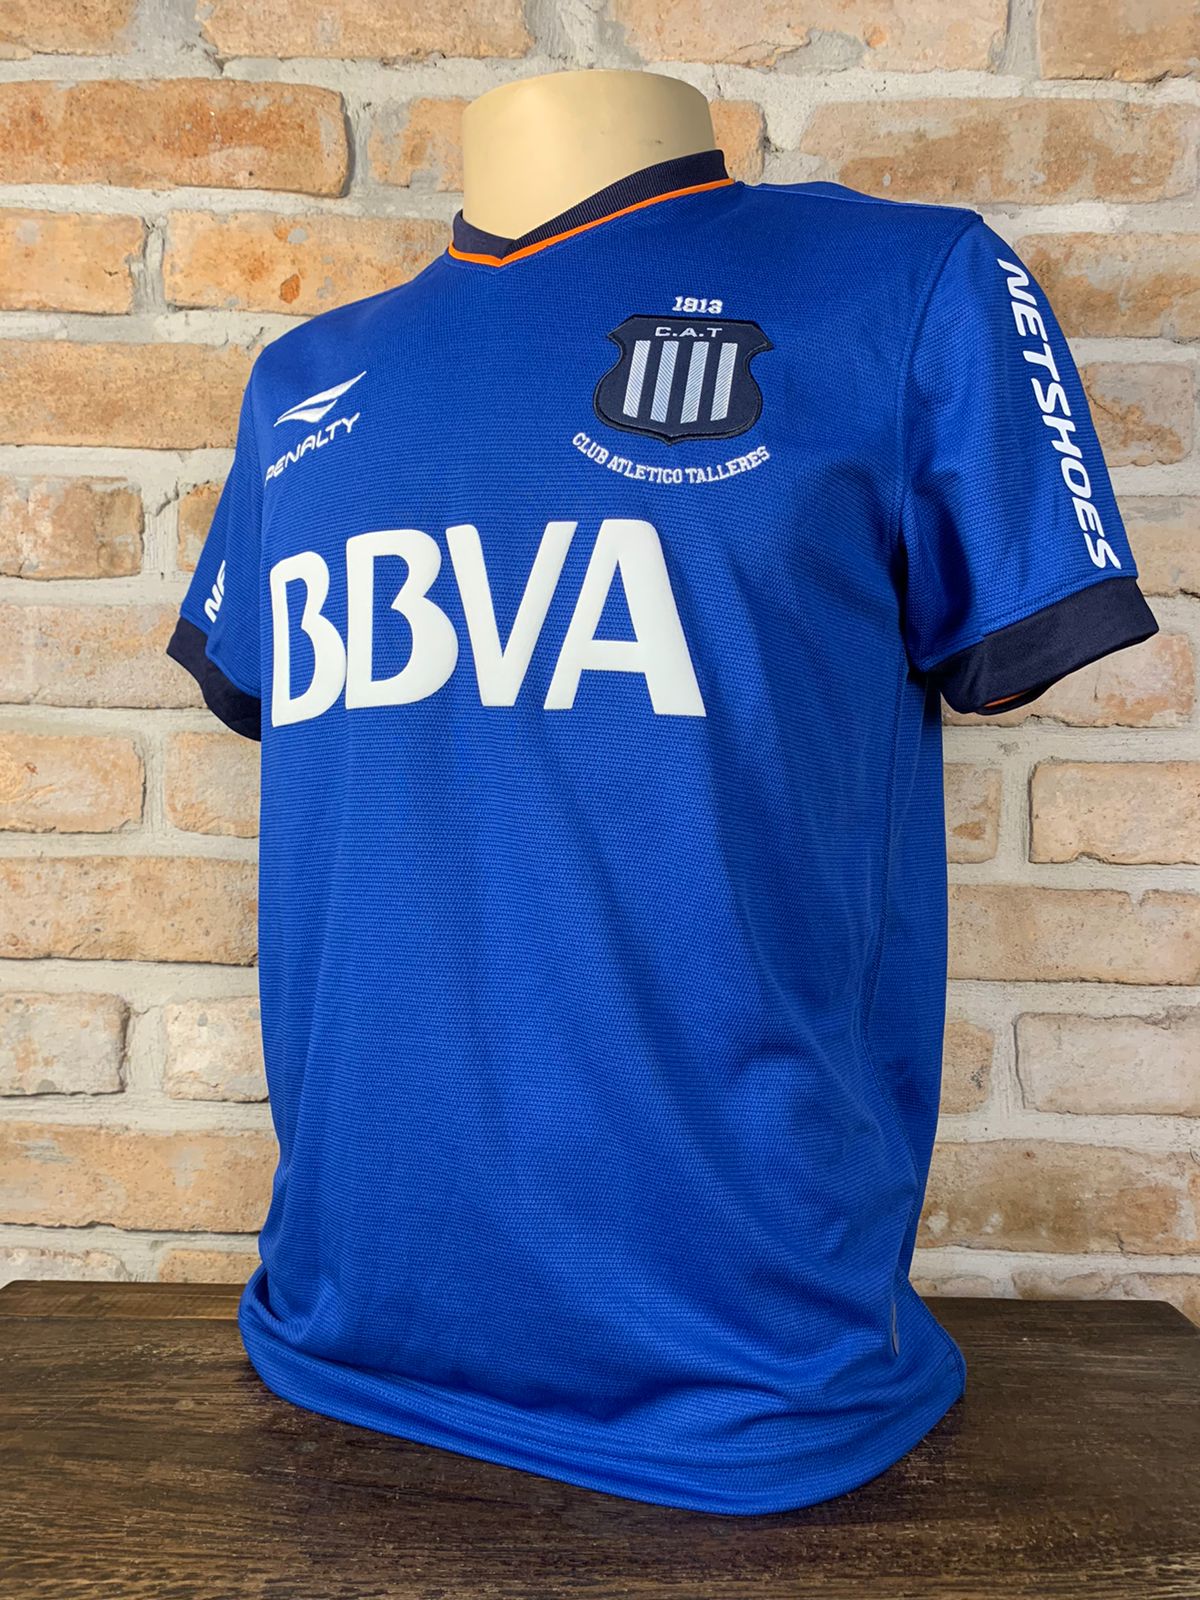 Camisa Club Atlético Independiente autografada pelo Guiñazú